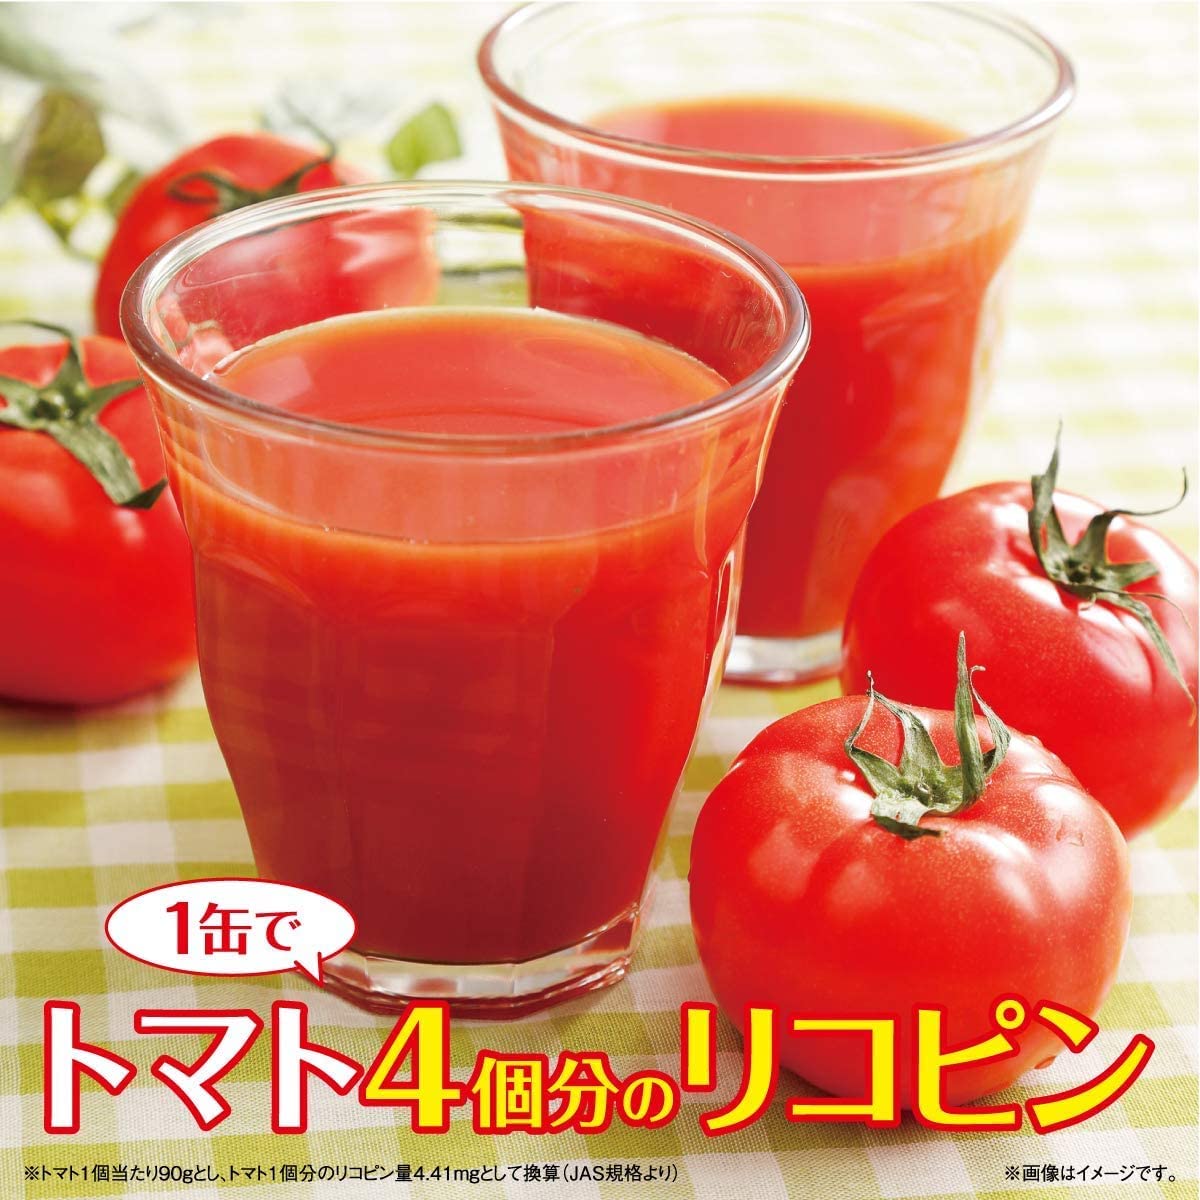 トマトジュース 熟トマト 缶 190g×20缶×2ケース 伊藤園 送料無料 2